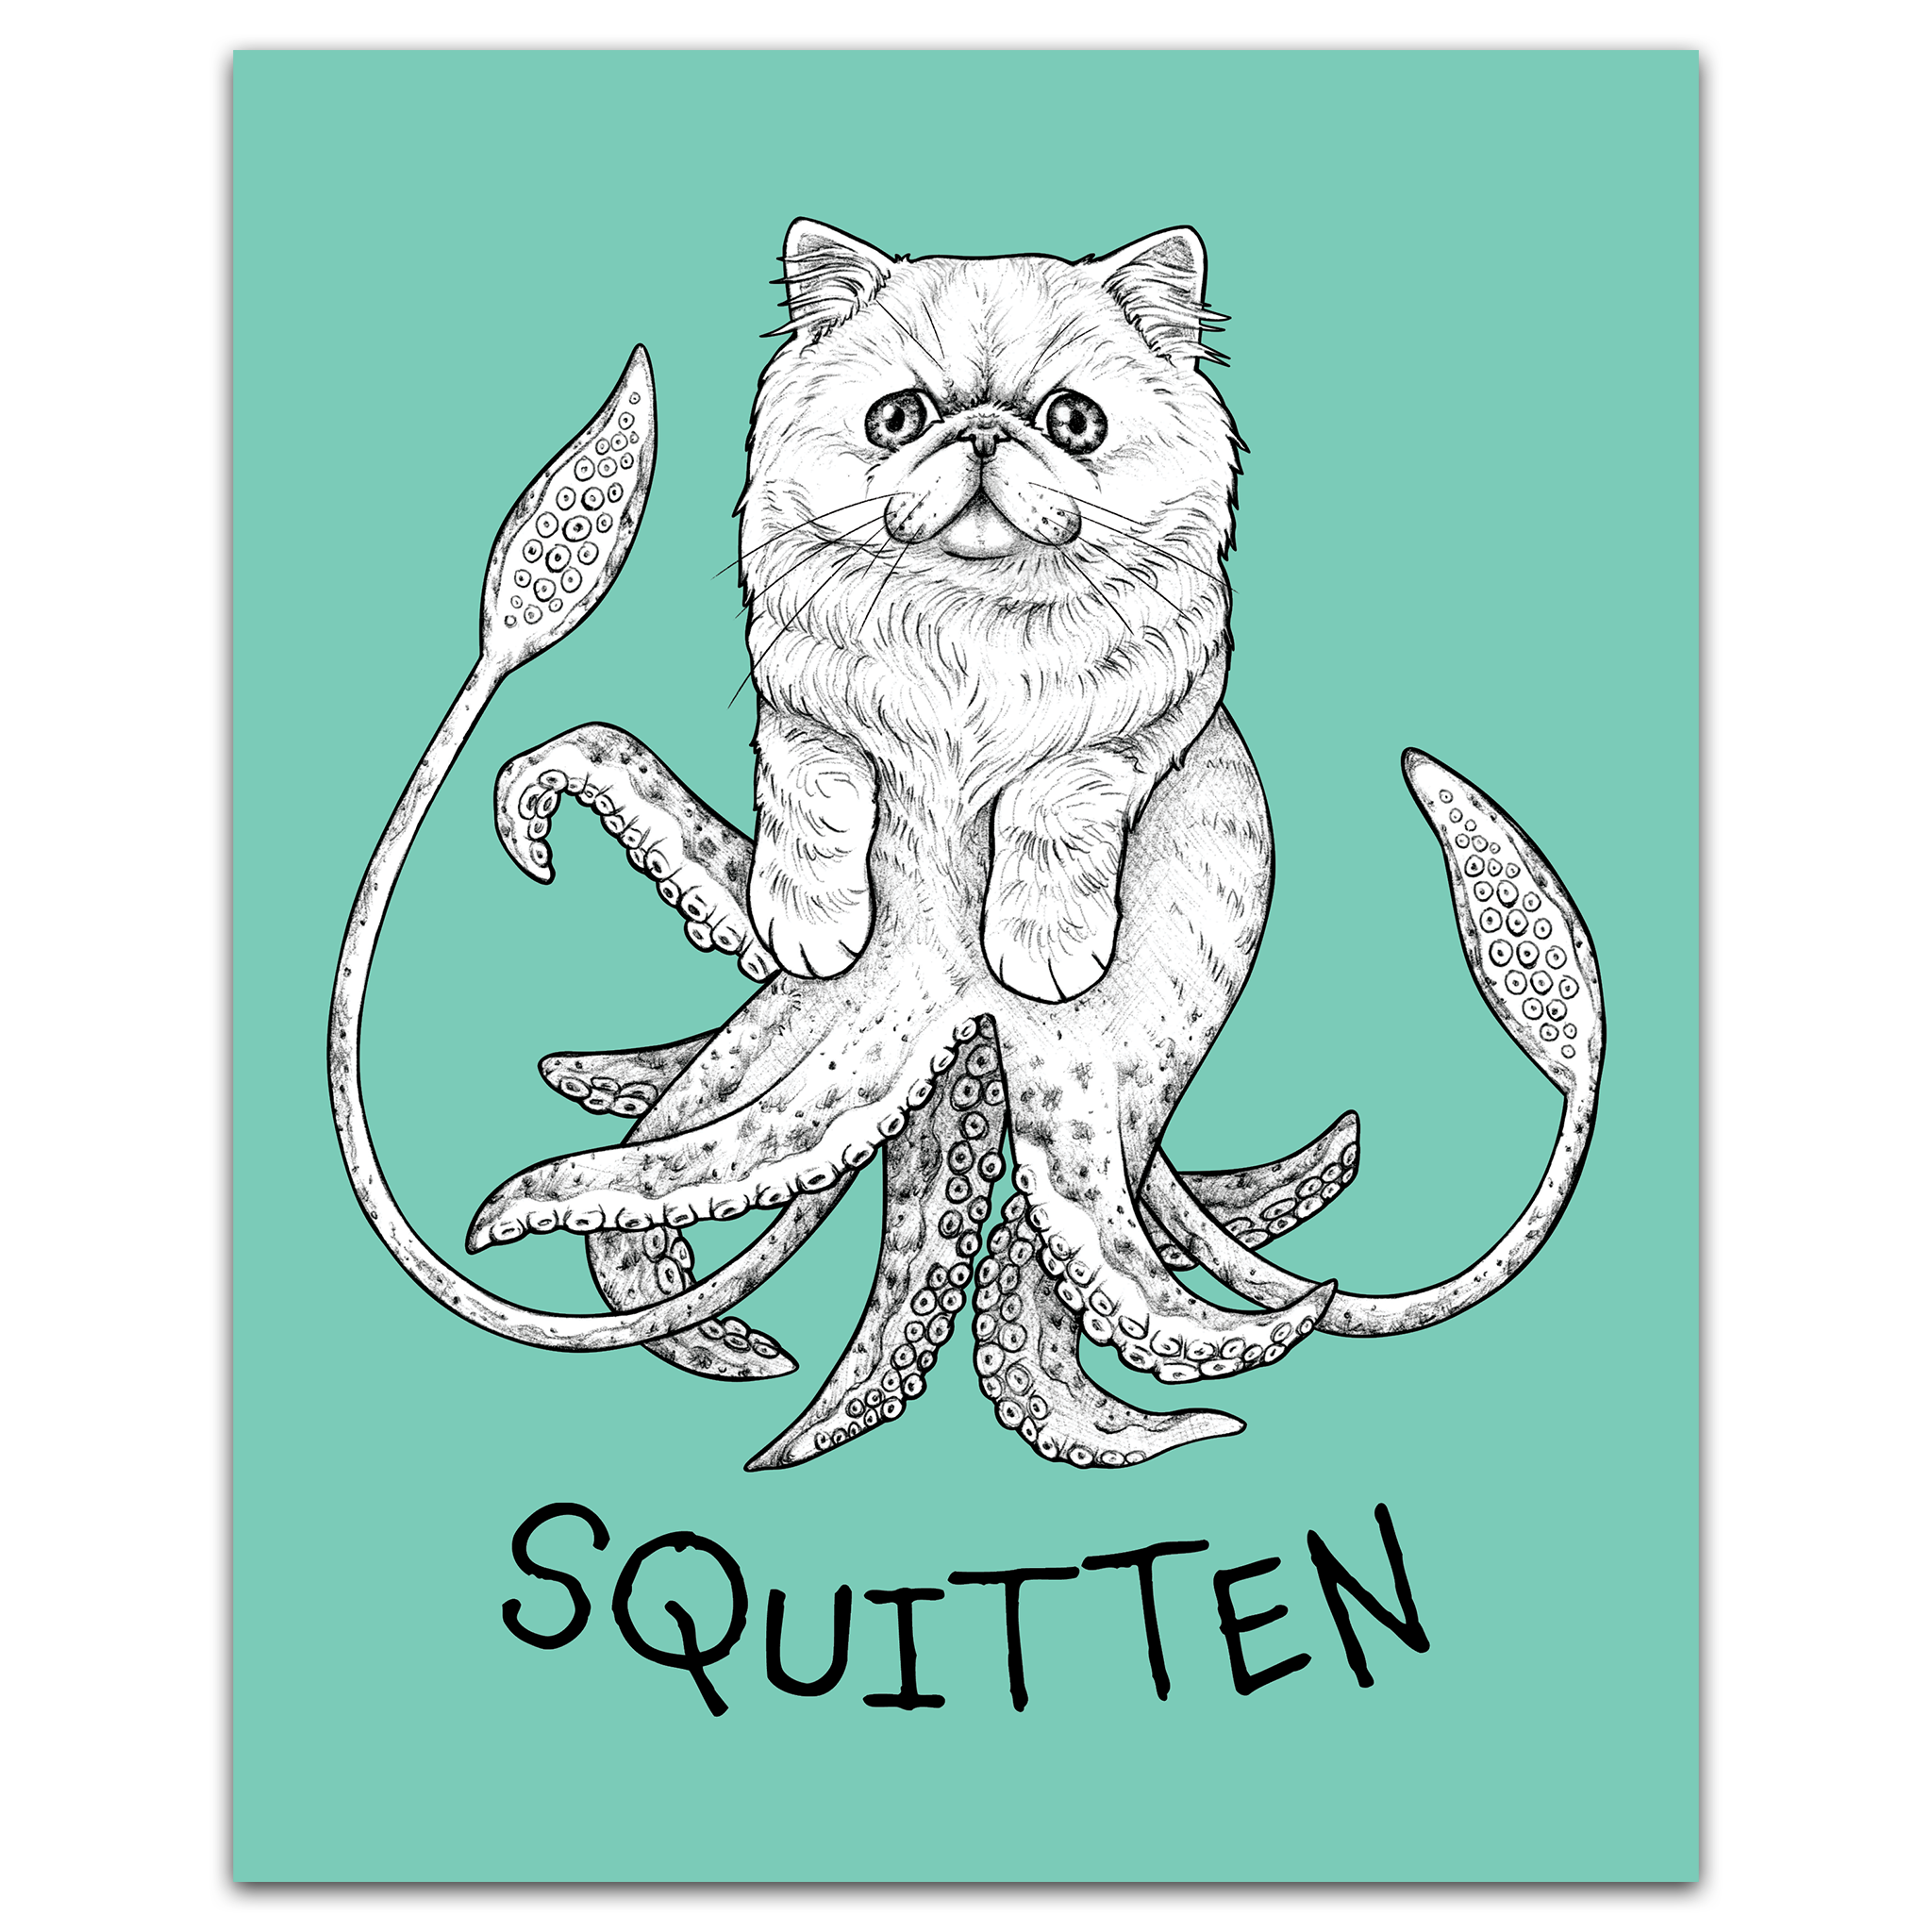 Squitten | Squid + Kitten Hybrid Animal | 8x10" Color Print